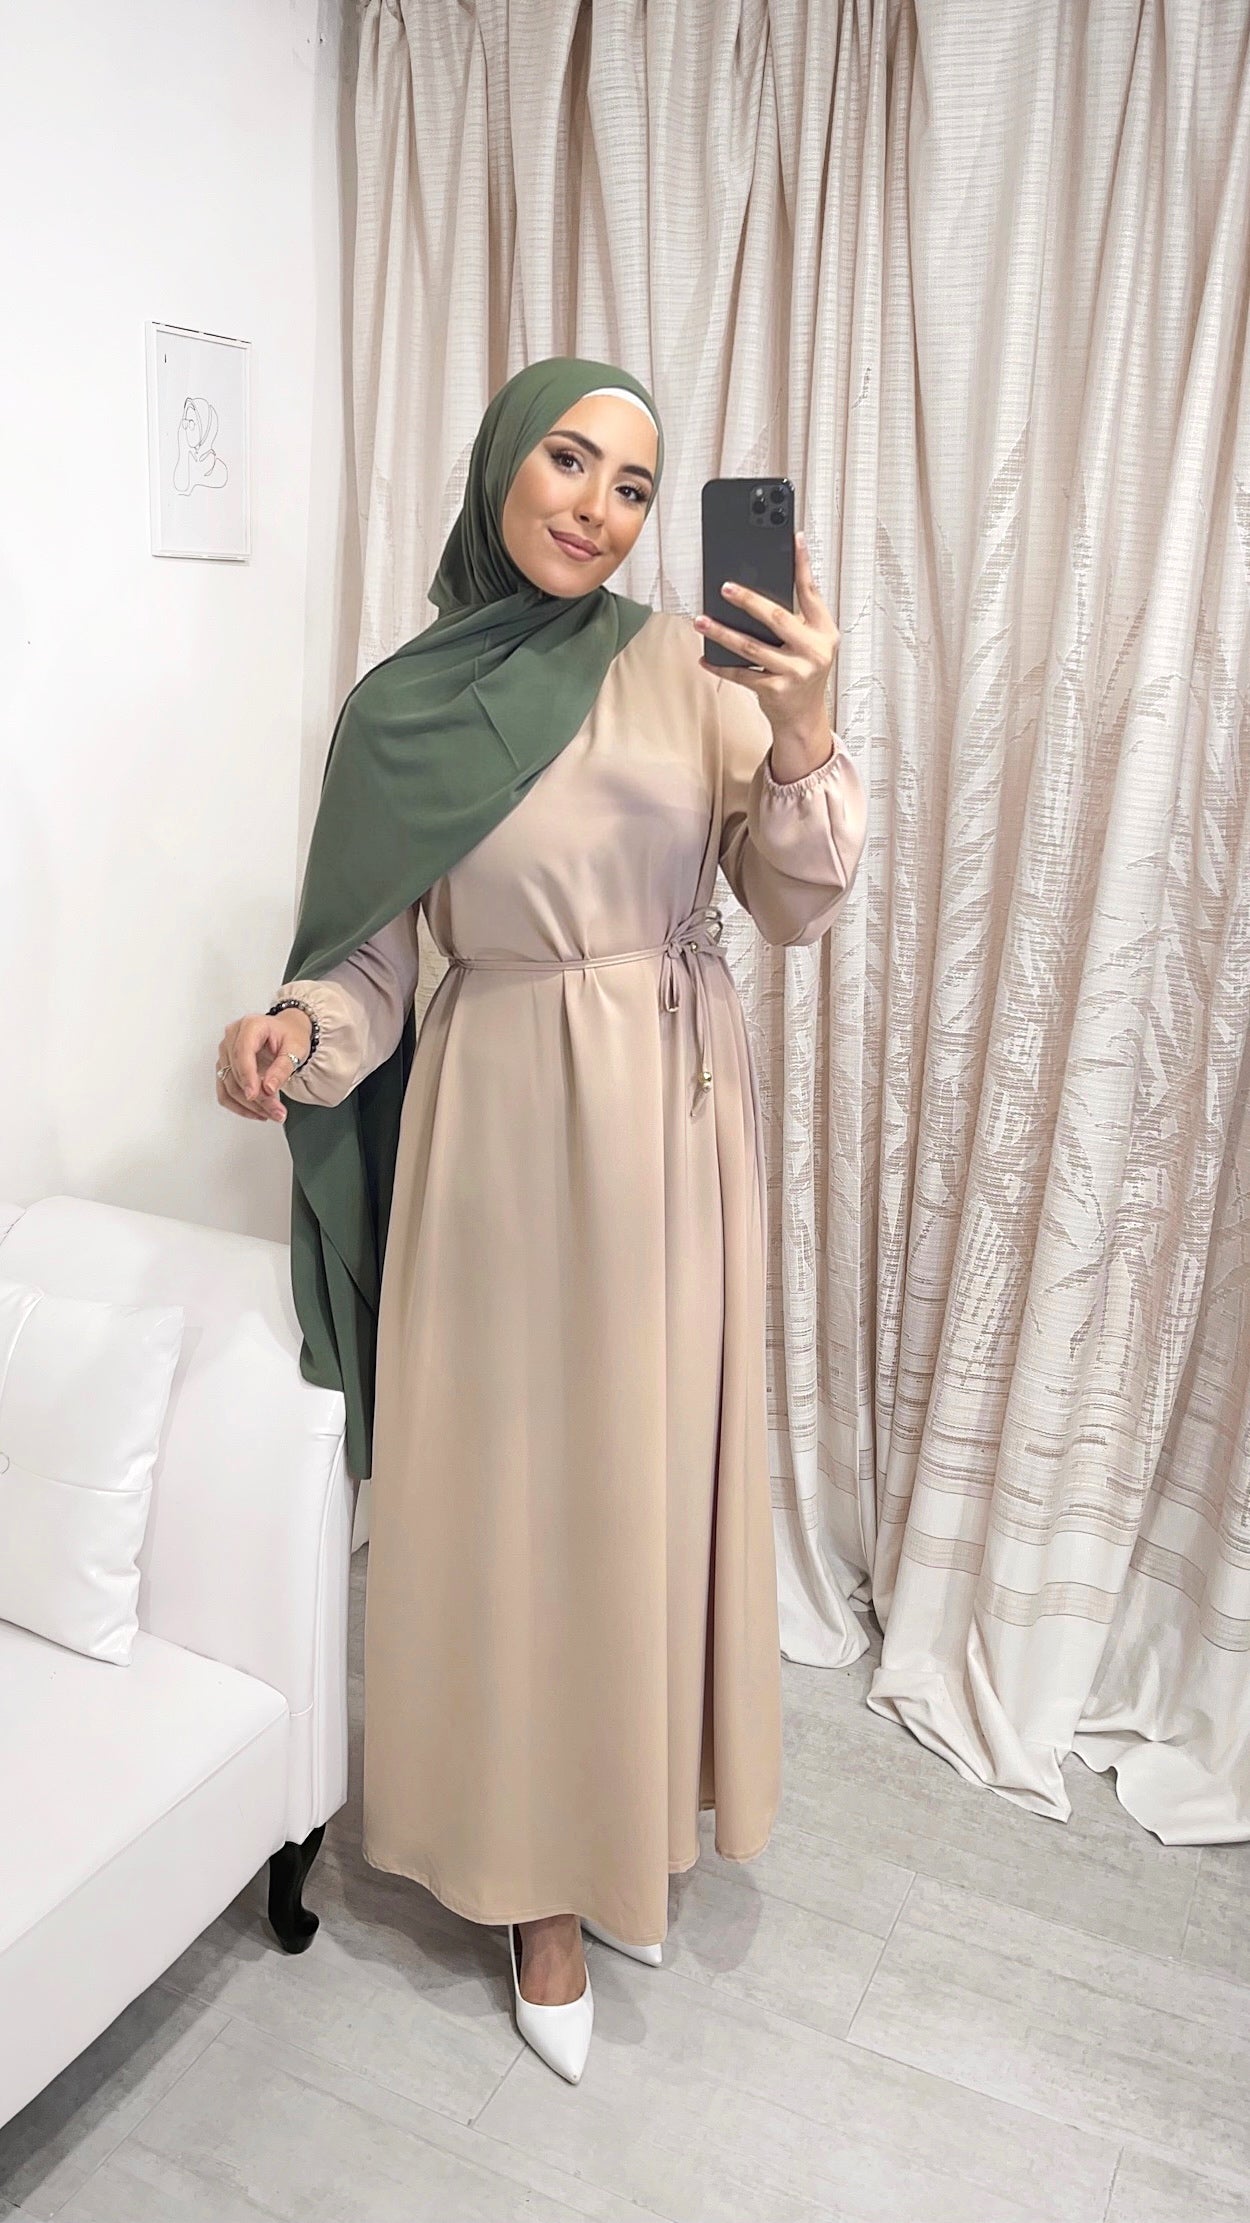 Vestito, abaya, semplice, colore unico, cintutino in vita, polsi arricciati, donna islamica, modest dress , Hijab Paradise,beaje , velo verde militare